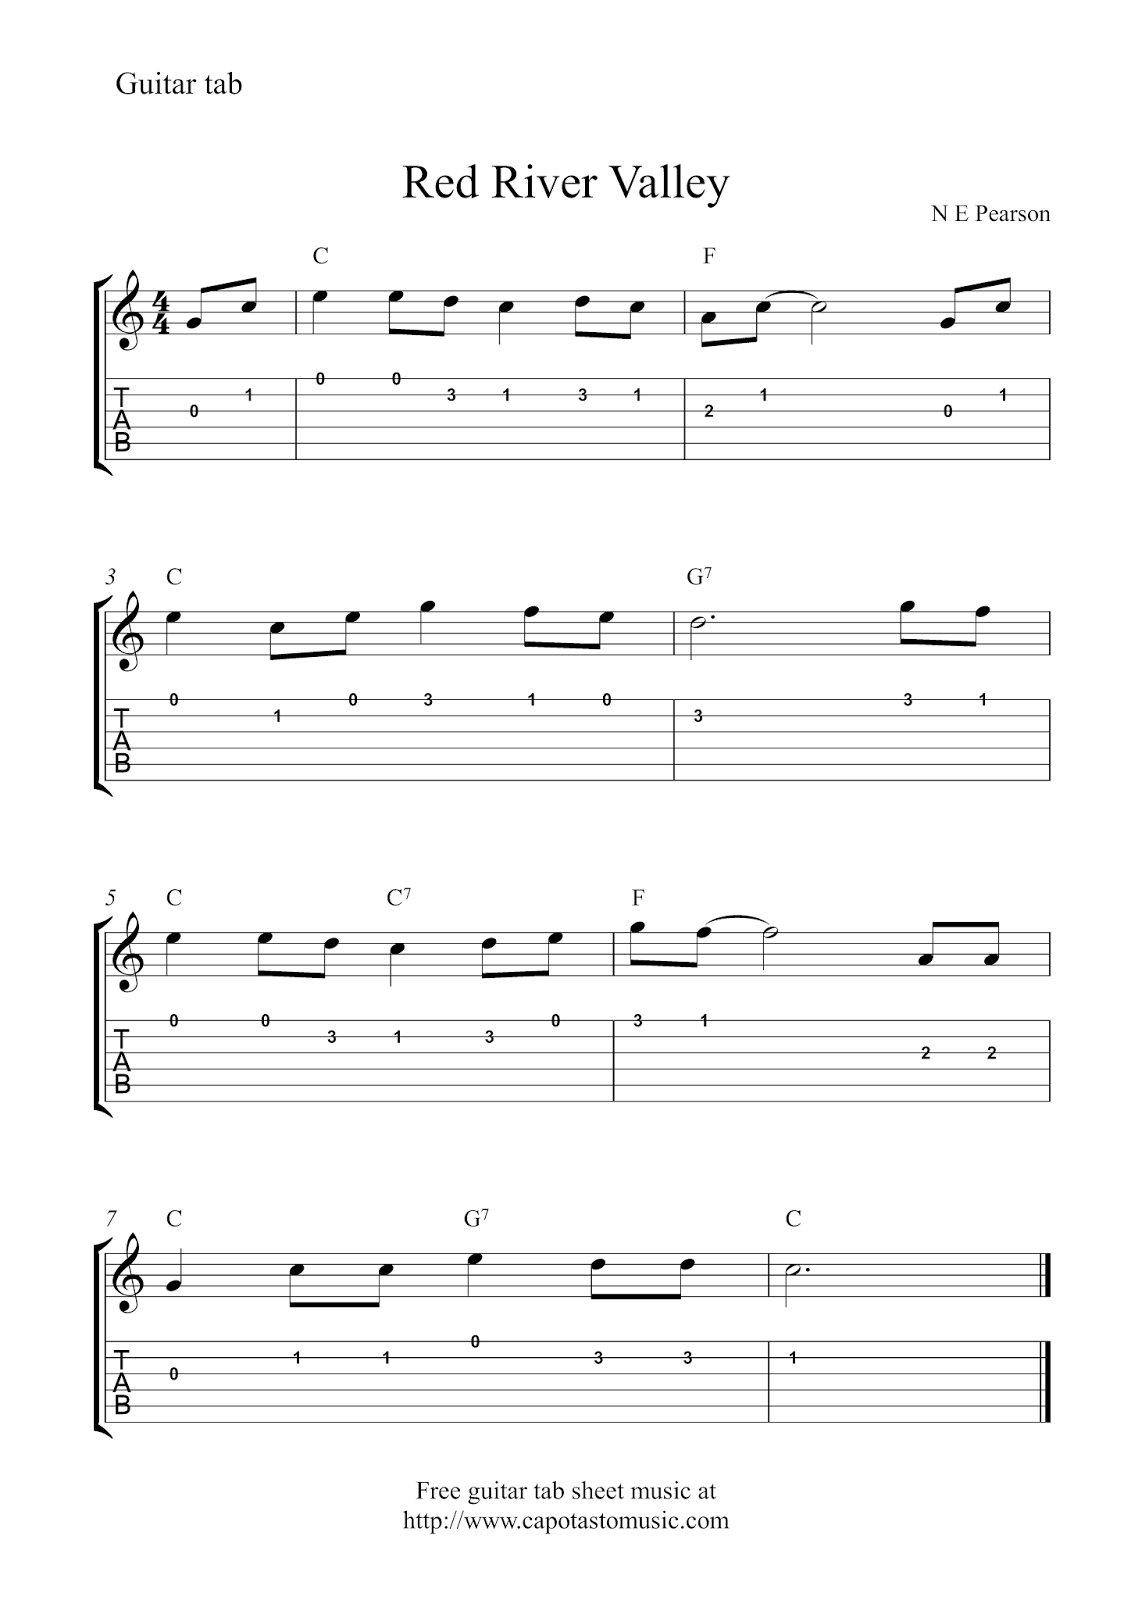 beginner-free-guitar-sheet-music-for-popular-songs-printable